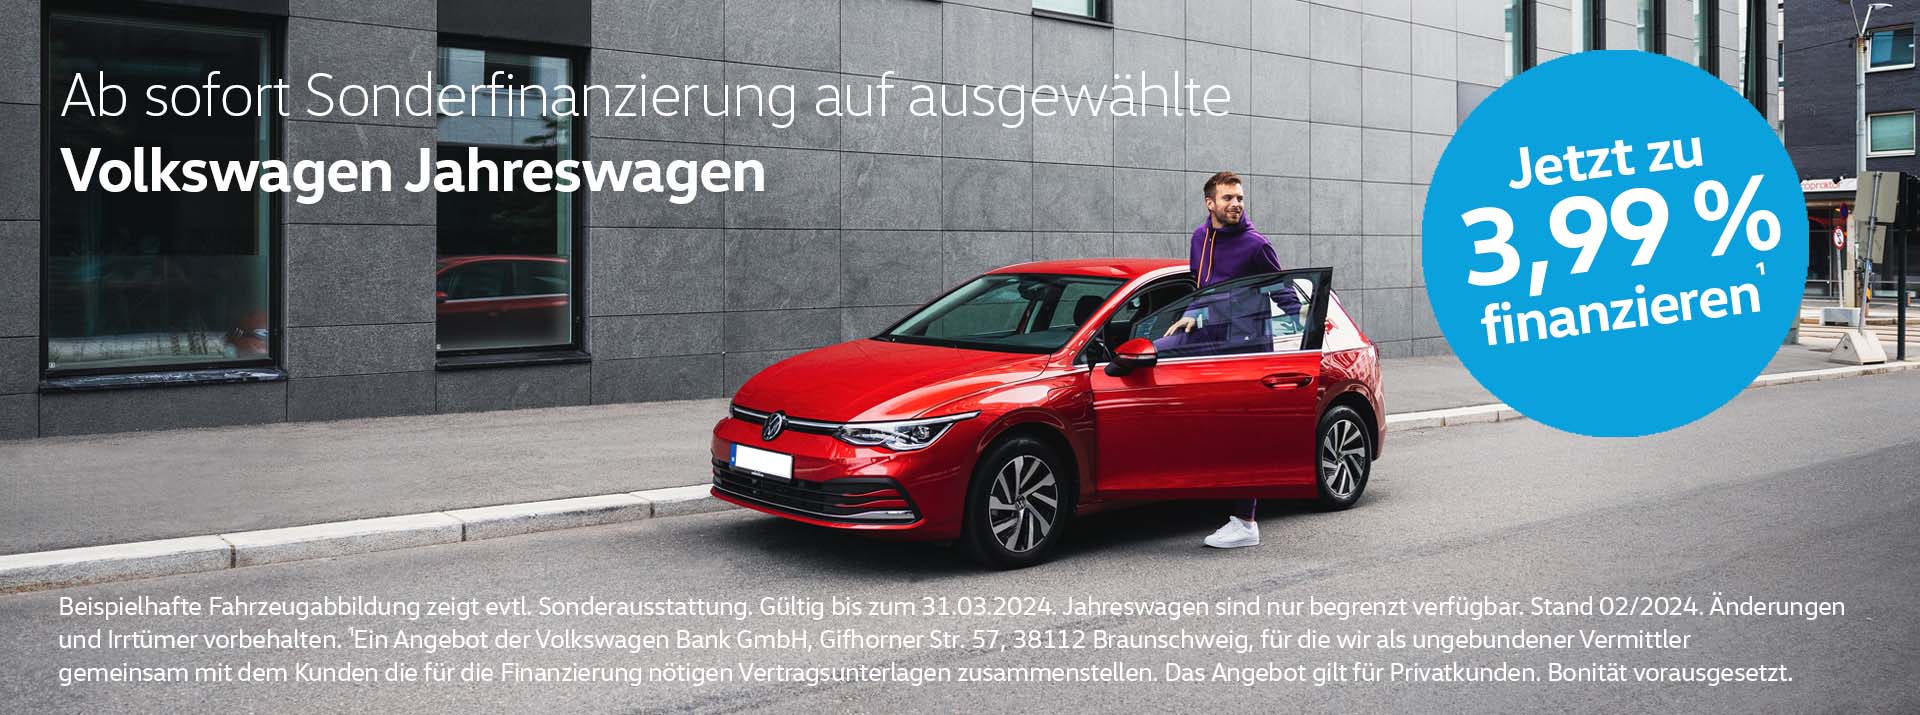 Volkswagen Jahreswagen Sonderfinanzierung 3,99 %